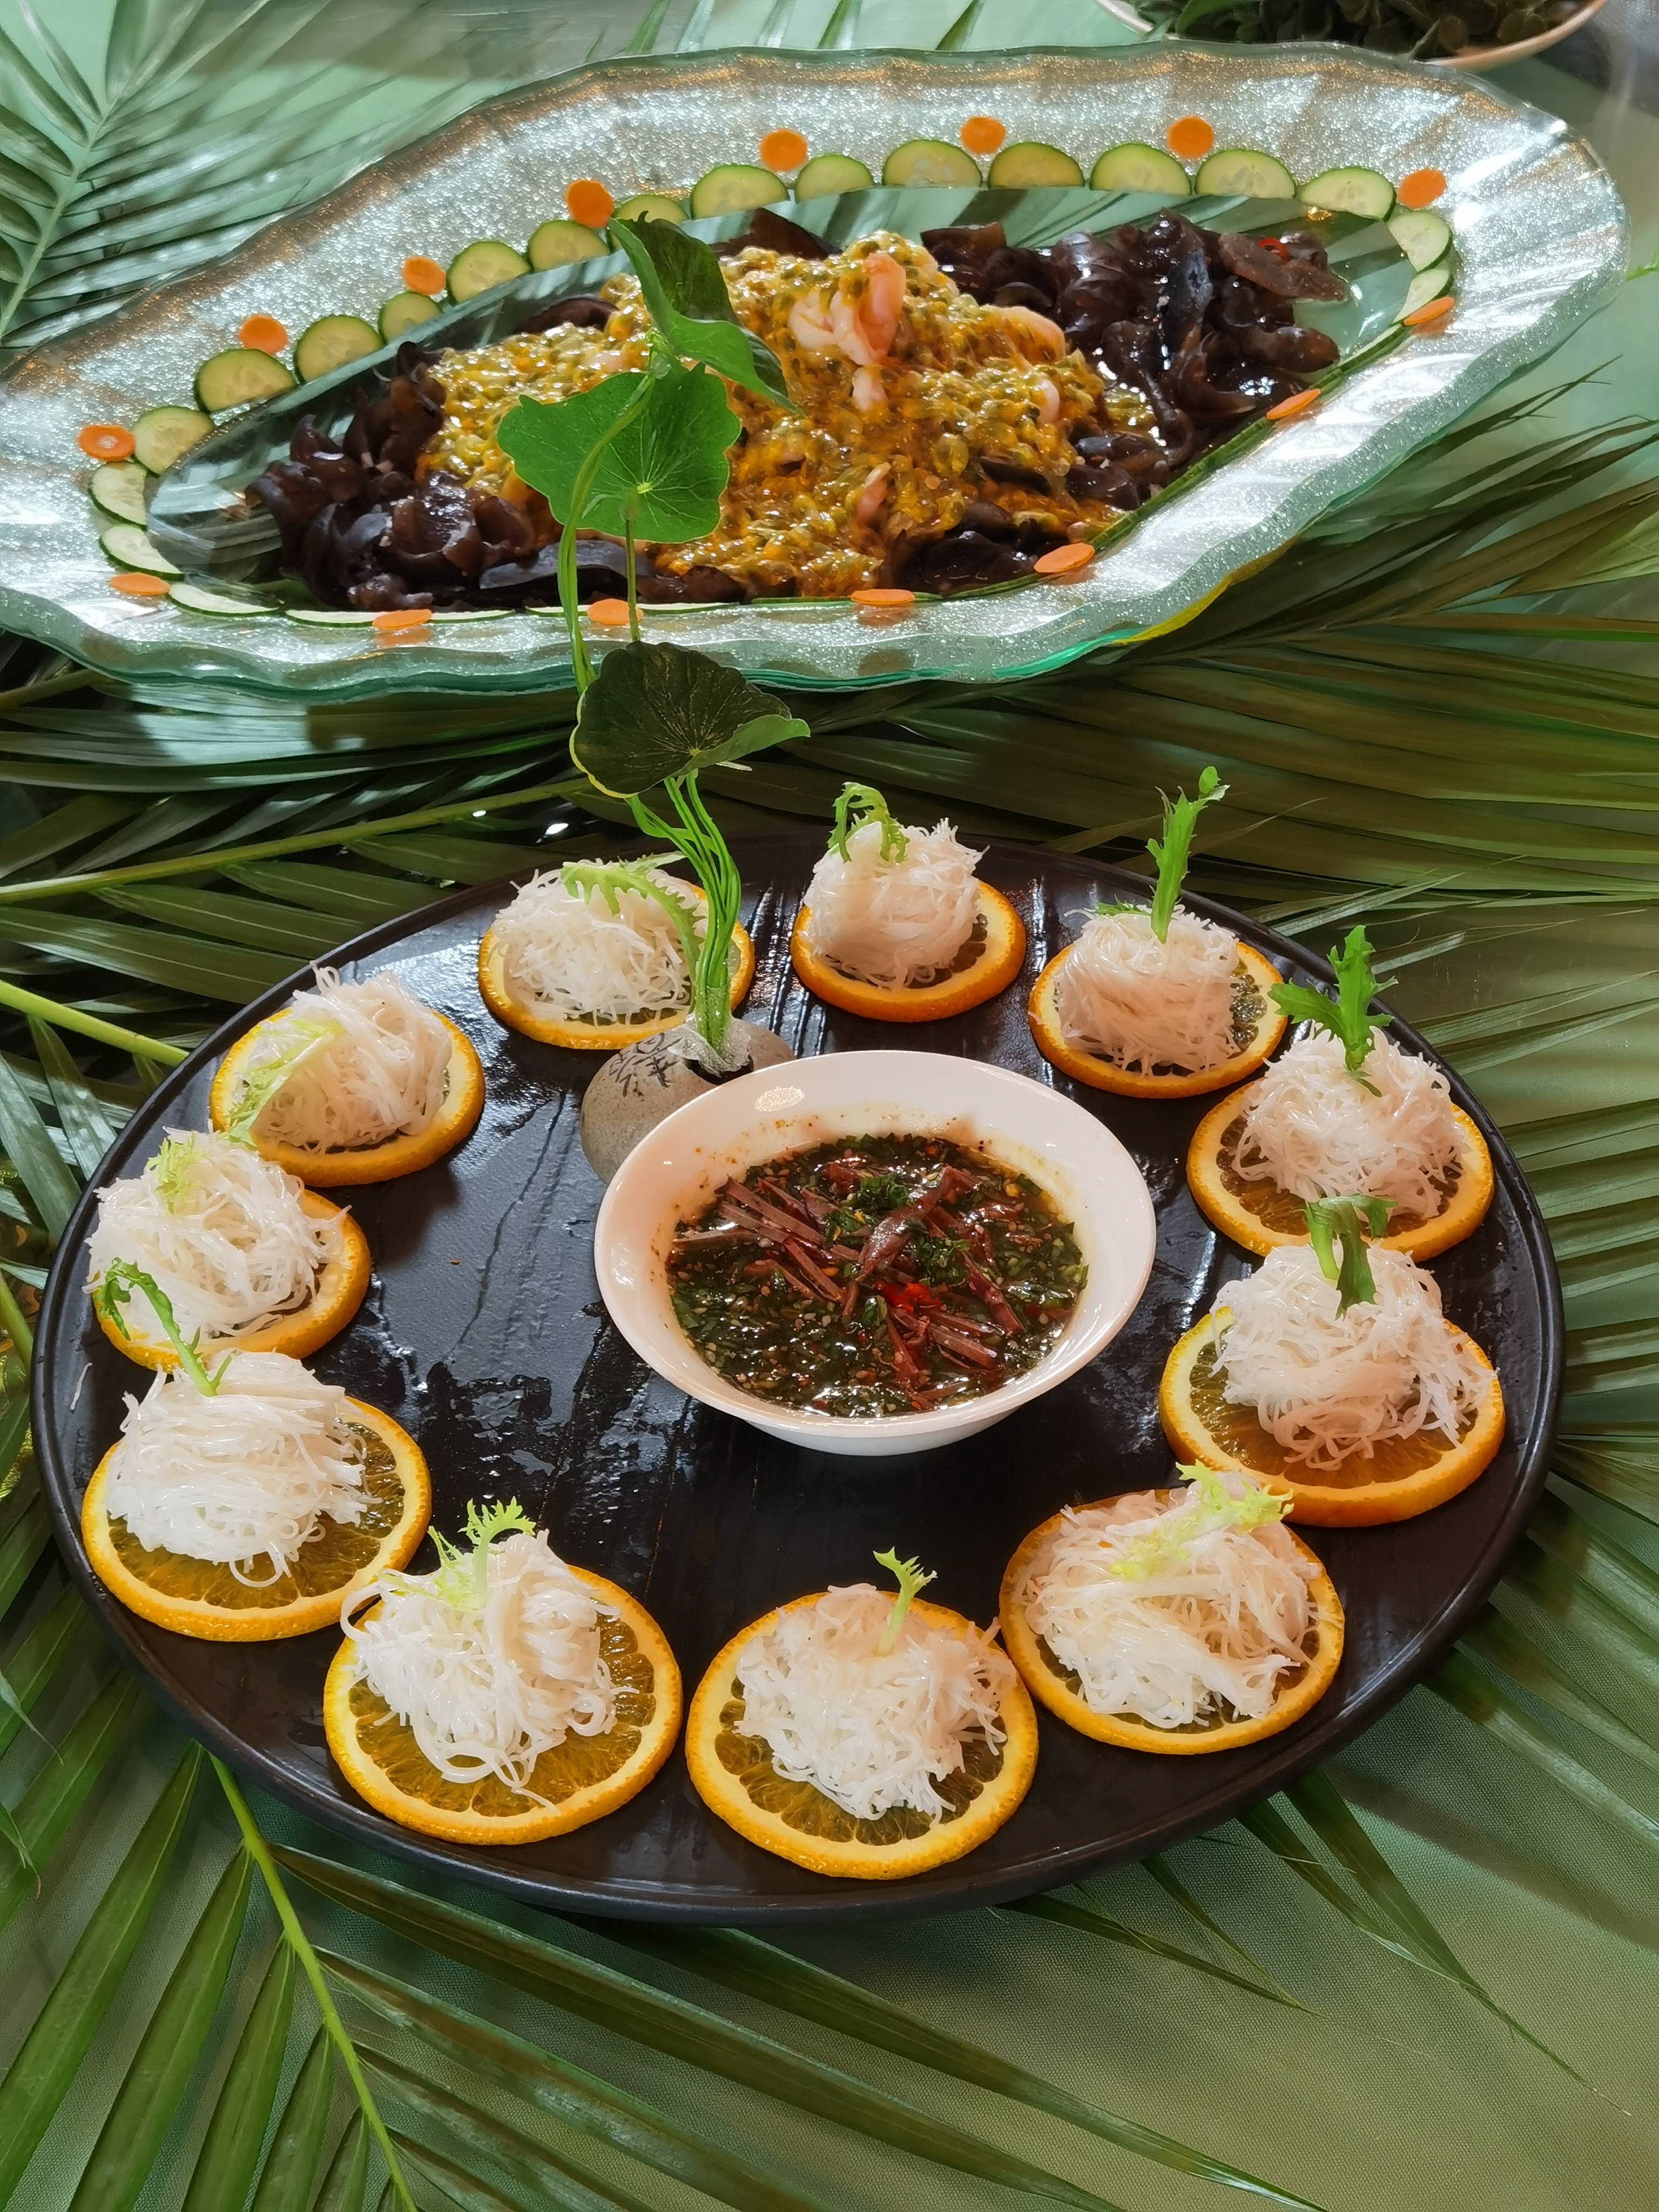 傣族八大特色菜图片图片